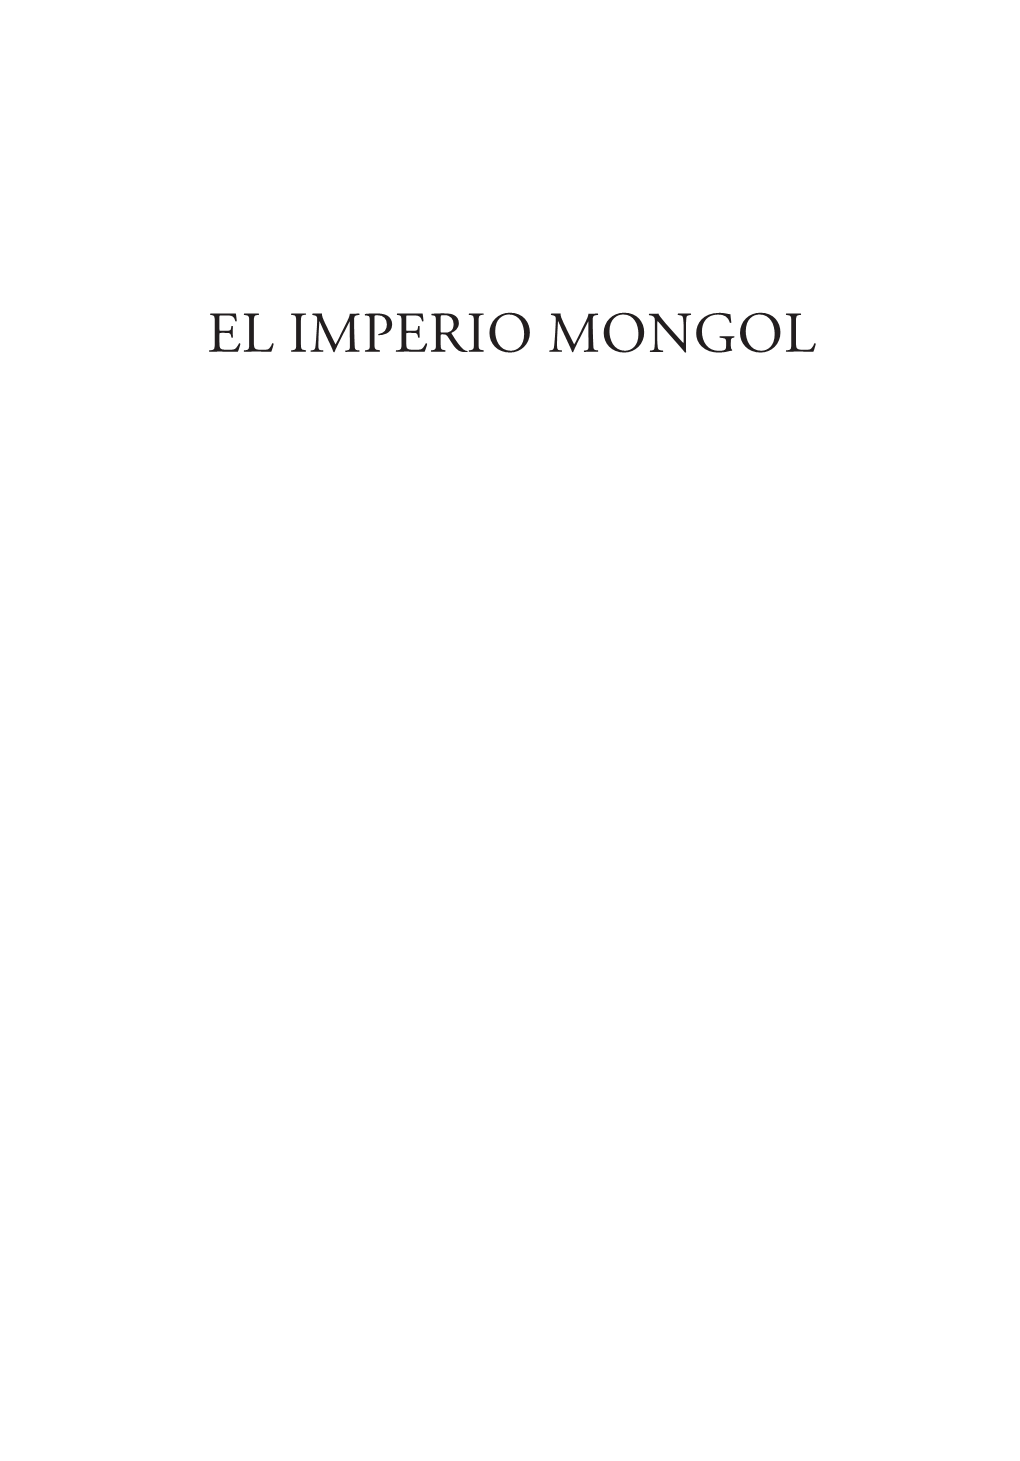 LIBRO El Imperio Mongol.Indb